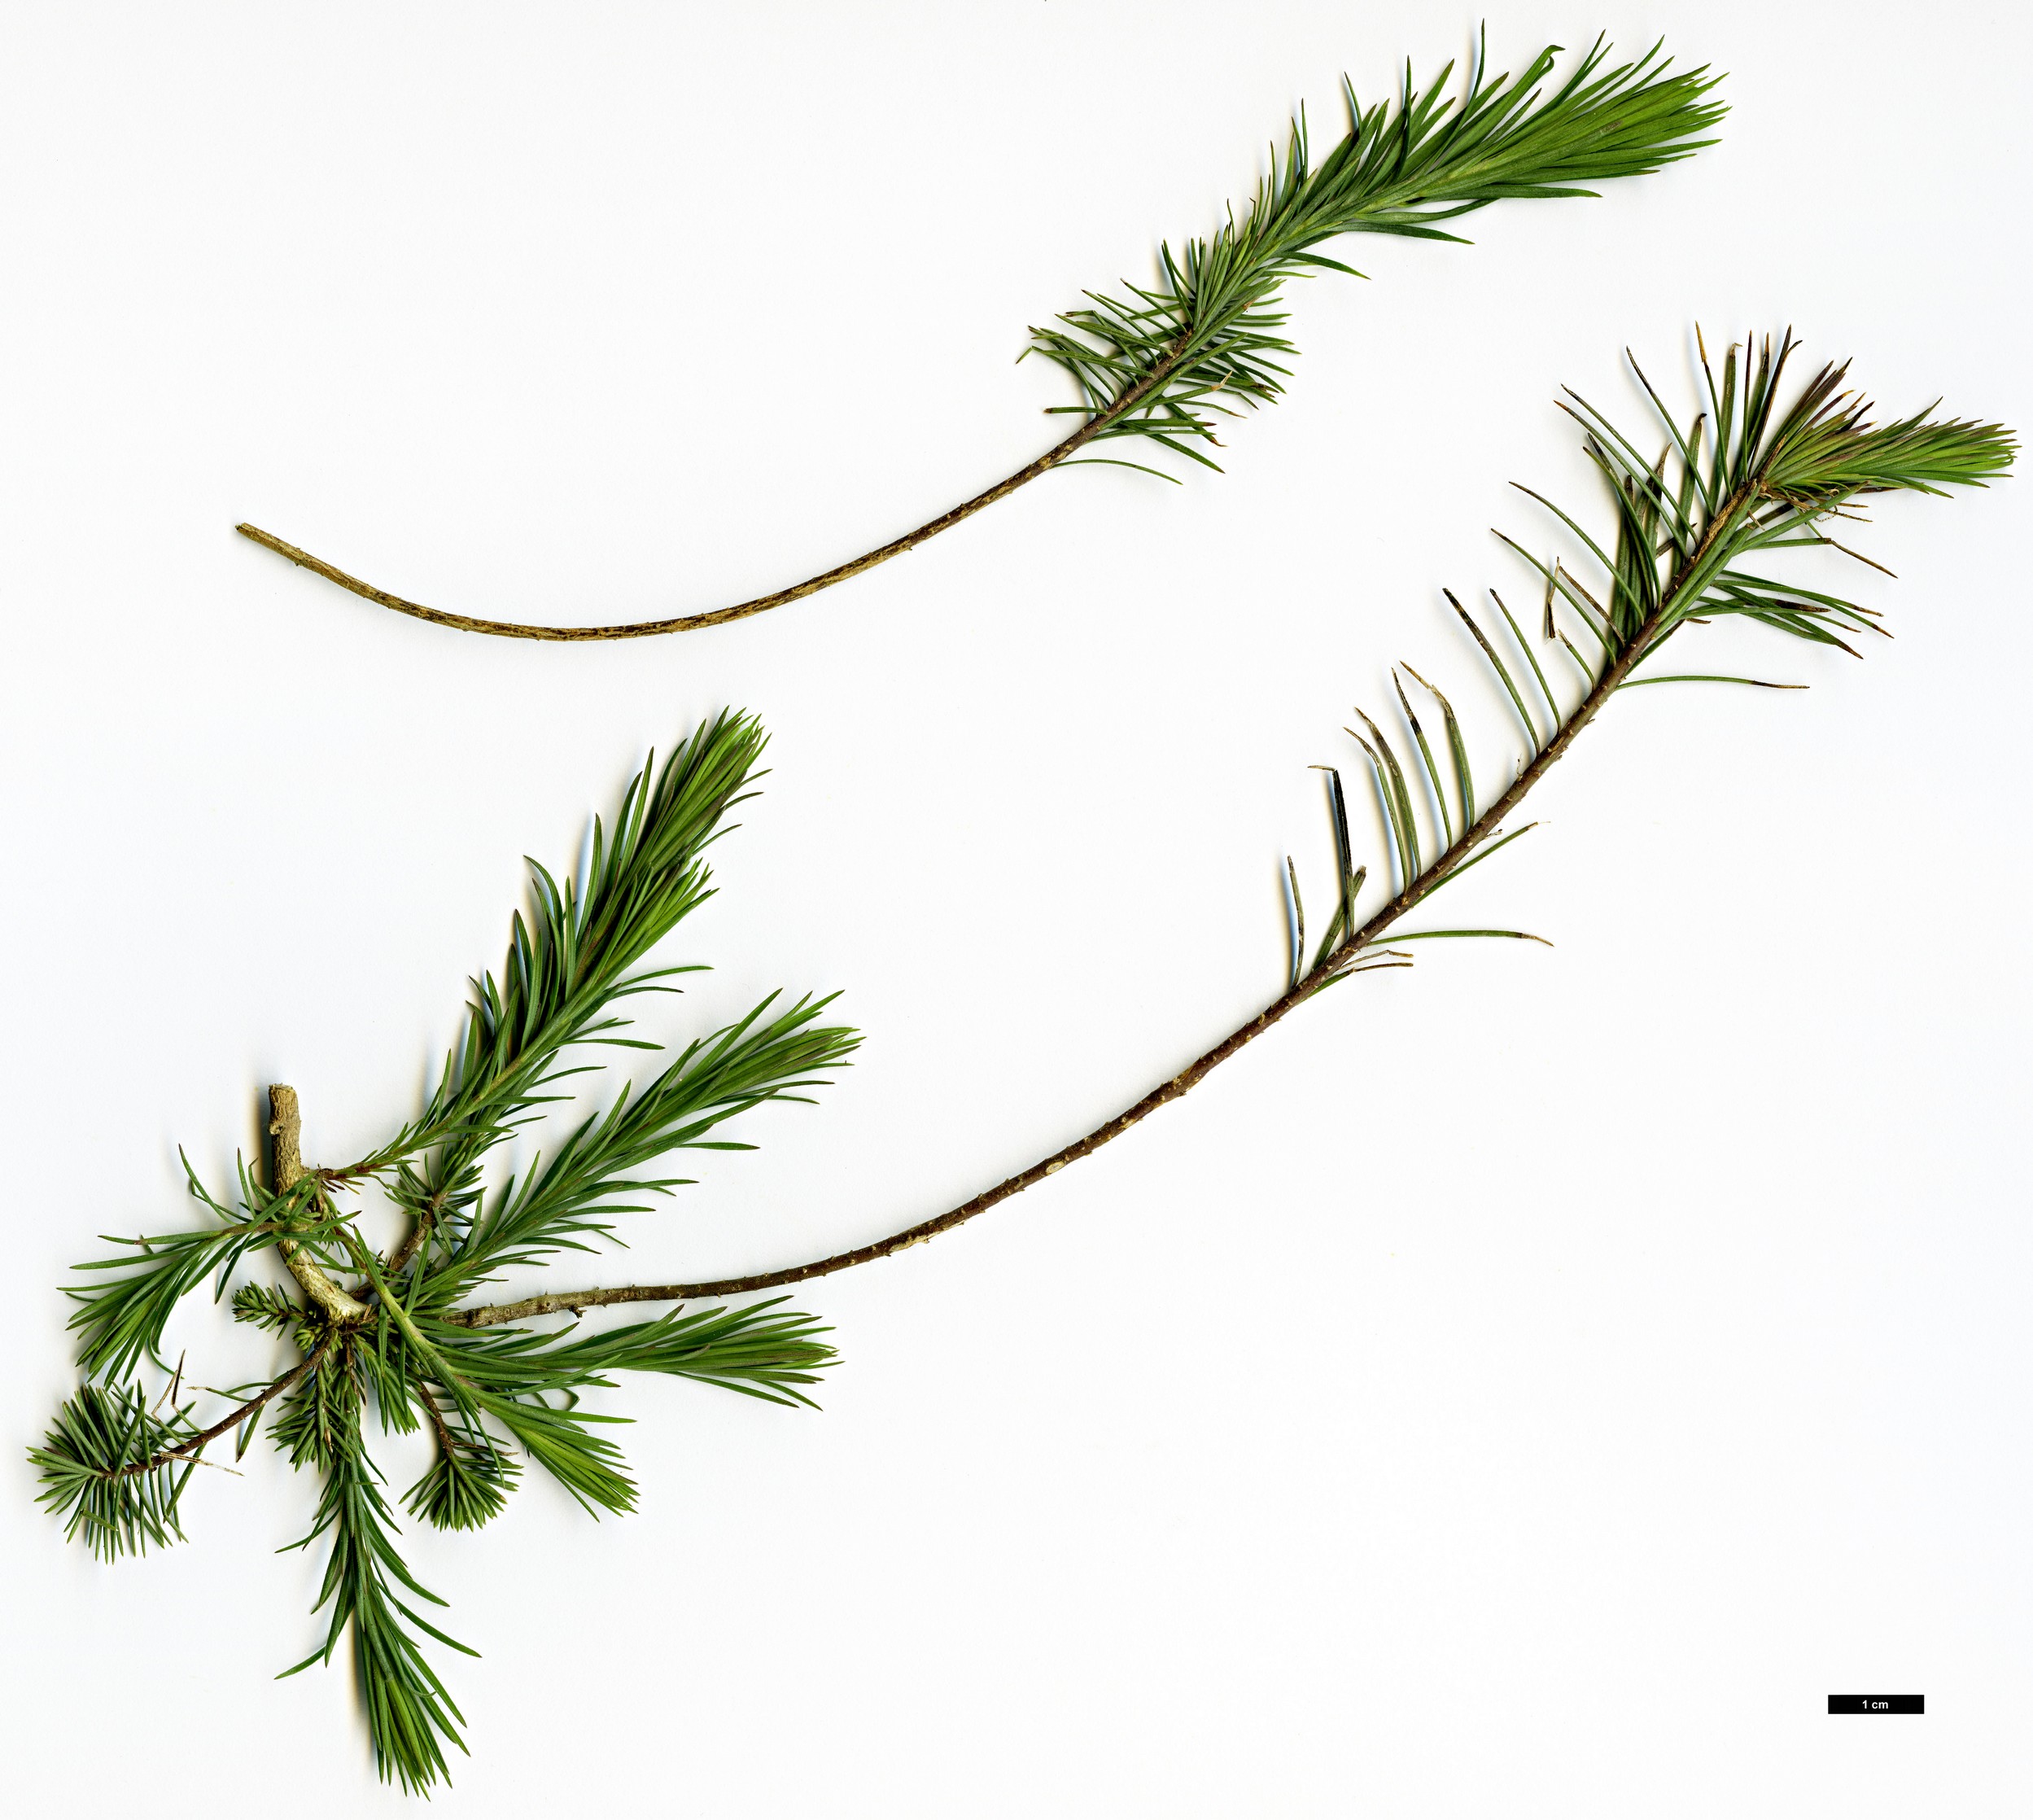 High resolution image: Family: Linaceae - Genus: Linum - Taxon: suffruticosum